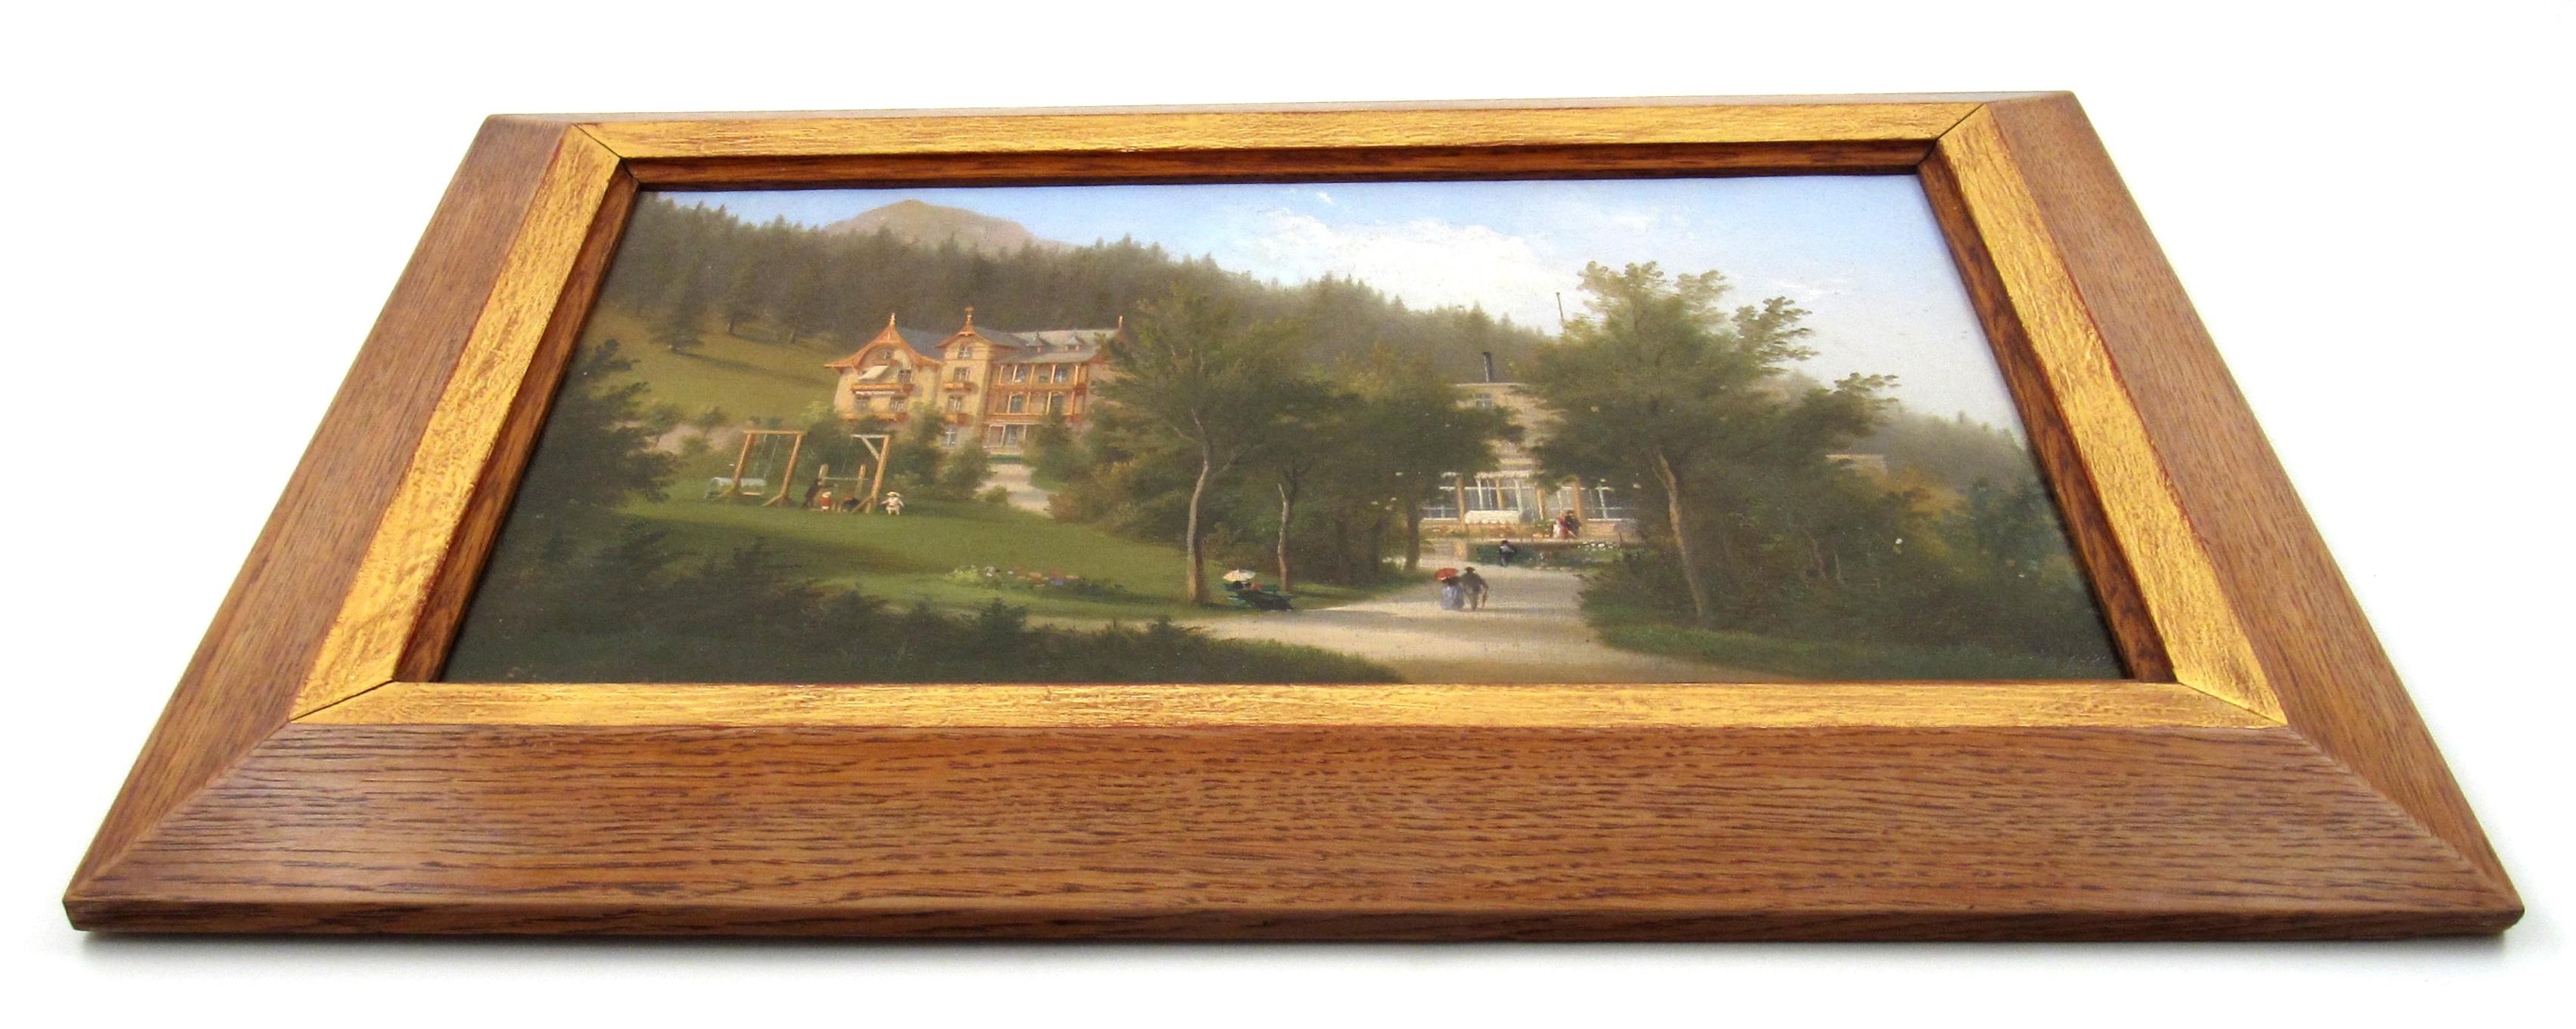 
Ferdinand Sommer
(Allemand, * 28.5.1822 Cobourg, † 26.7.1901 Lucerne)

Le Kurhaus Villa Germania à Davos, Suisse, en 1874

• Huile sur toile, environ 31 x 48 cm
• Cadre en chêne tardif, environ 45 x 62 cm
• Signé en bas à gauche

Une belle peinture